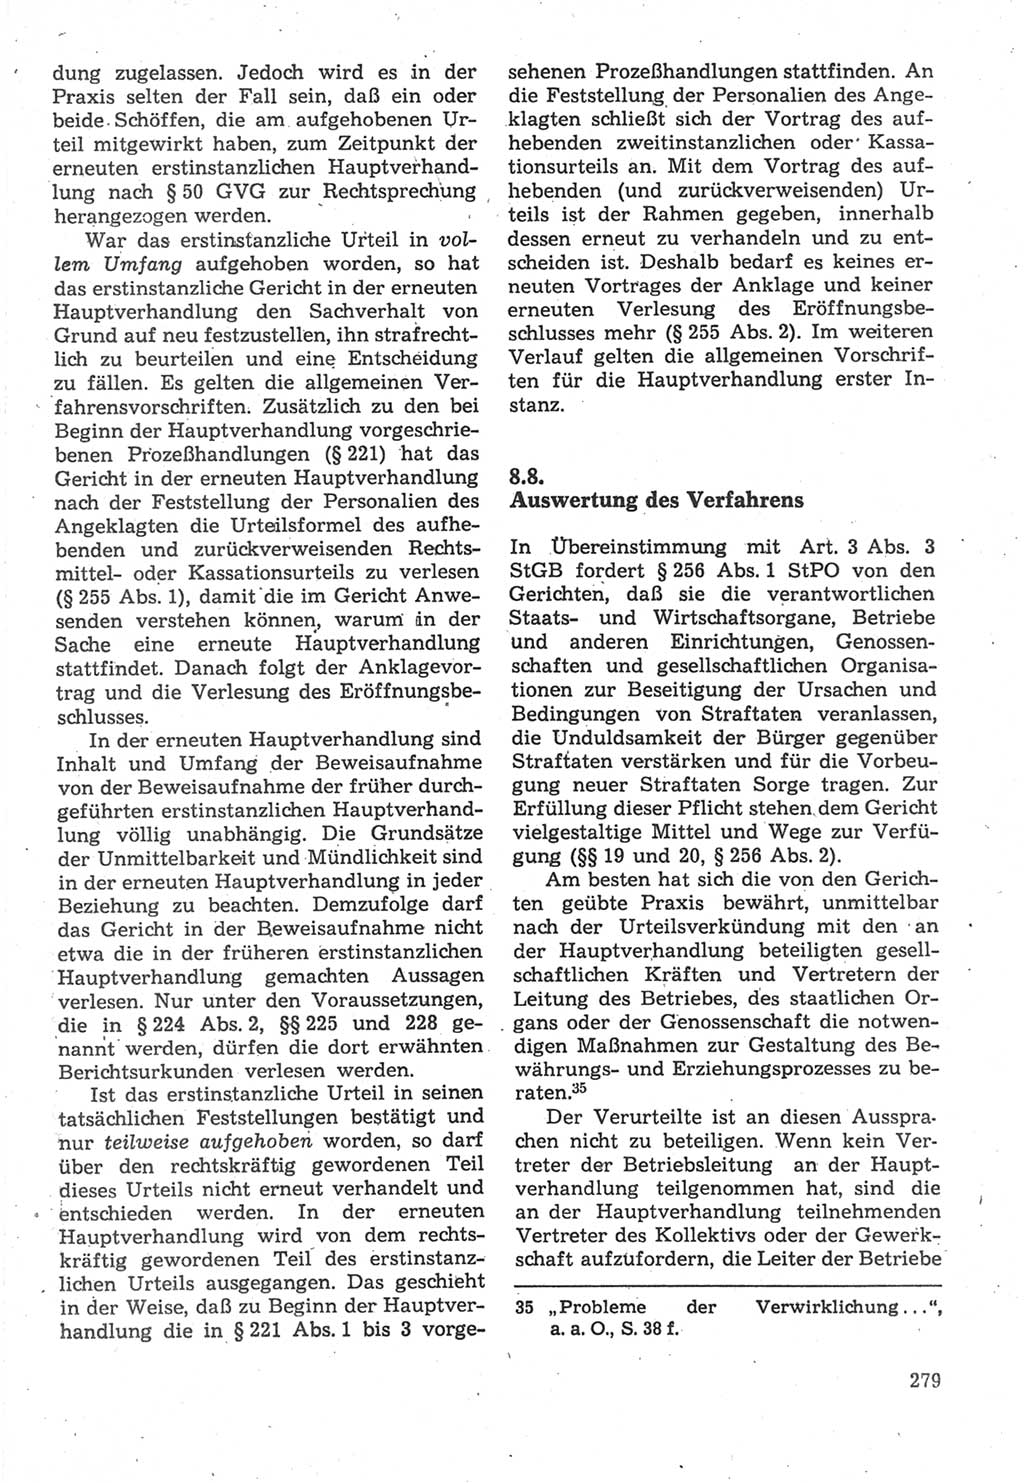 Strafverfahrensrecht [Deutsche Demokratische Republik (DDR)], Lehrbuch 1987, Seite 279 (Strafverf.-R. DDR Lb. 1987, S. 279)